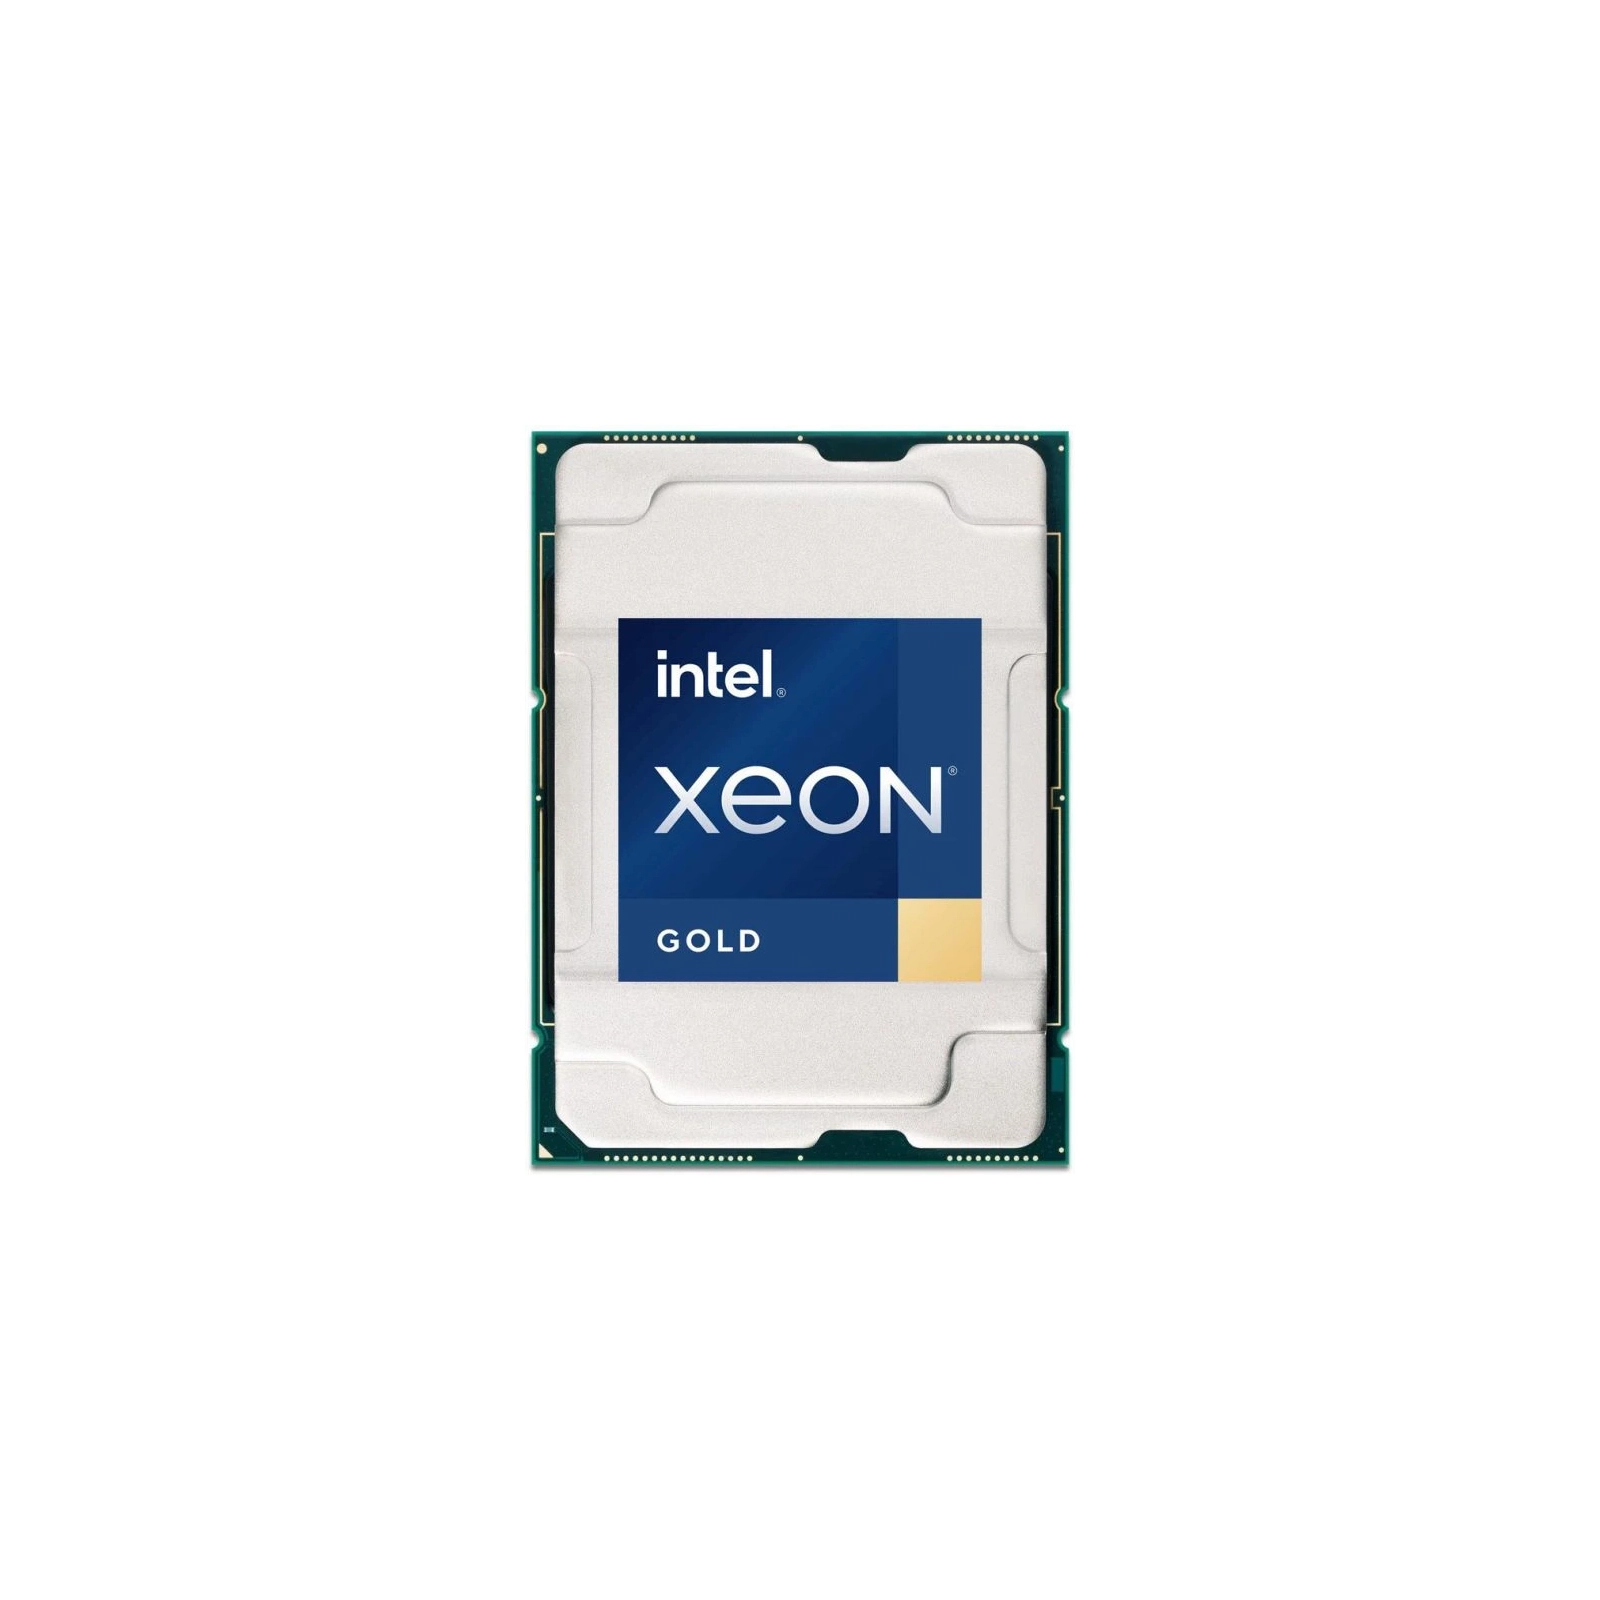 Процесор серверний Dell EMC Intel Xeon Gold 5315Y 3.2G, 8C/16T, 11.2GT/s, 12M Cache, Turbo, HT (140W) DDR4-2933 (338-CBWM)